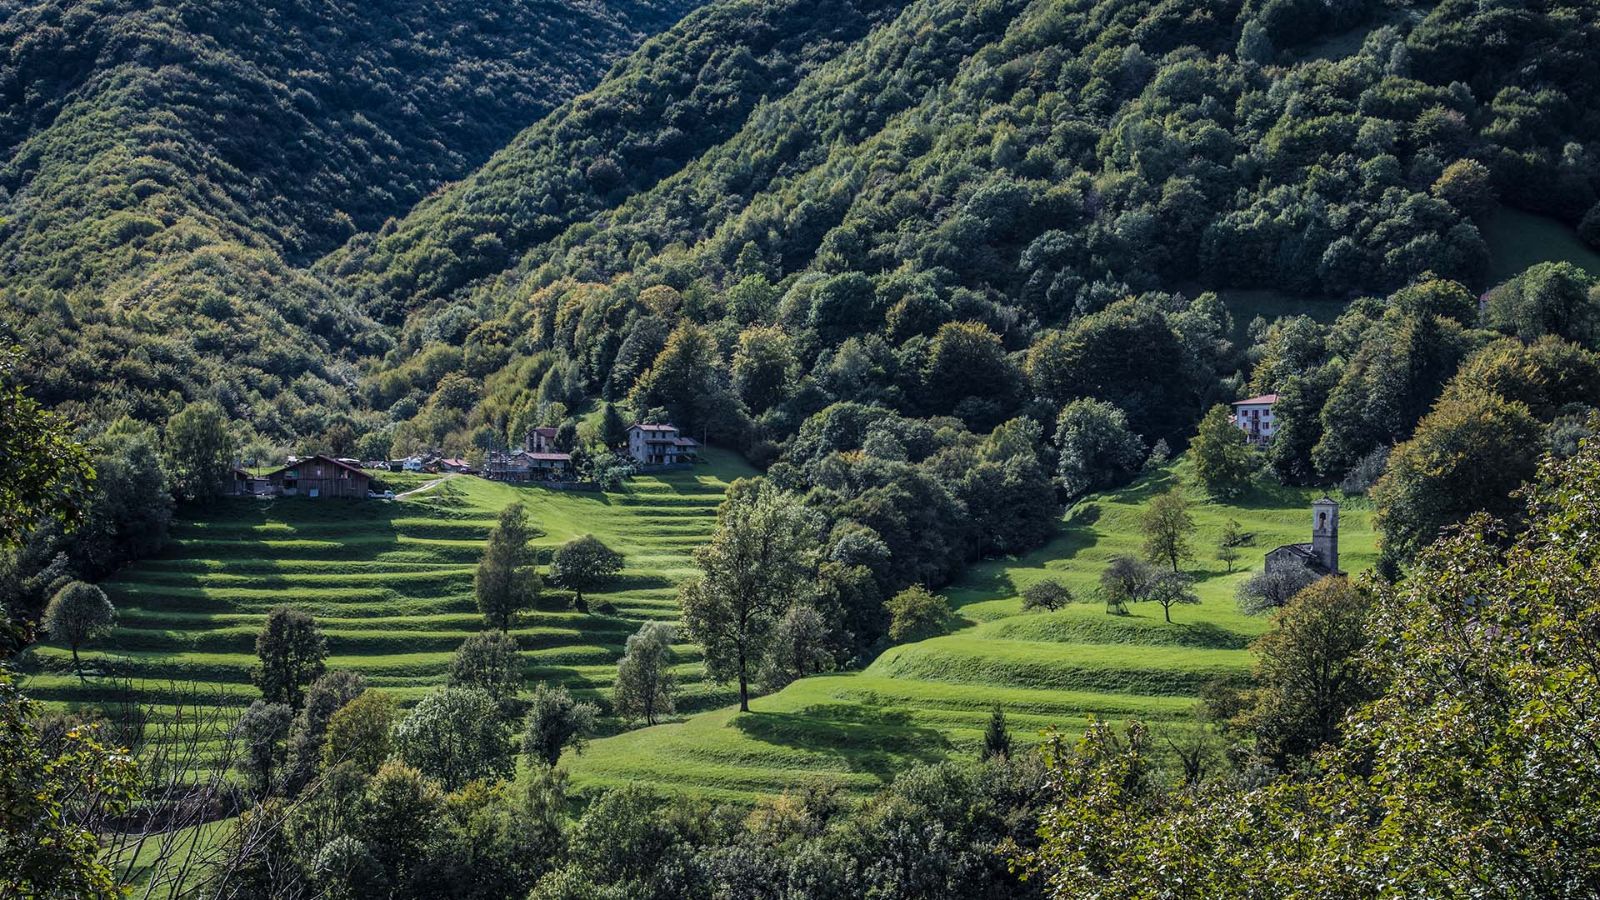 Valle di Muggio, typiques terrasses de Turro